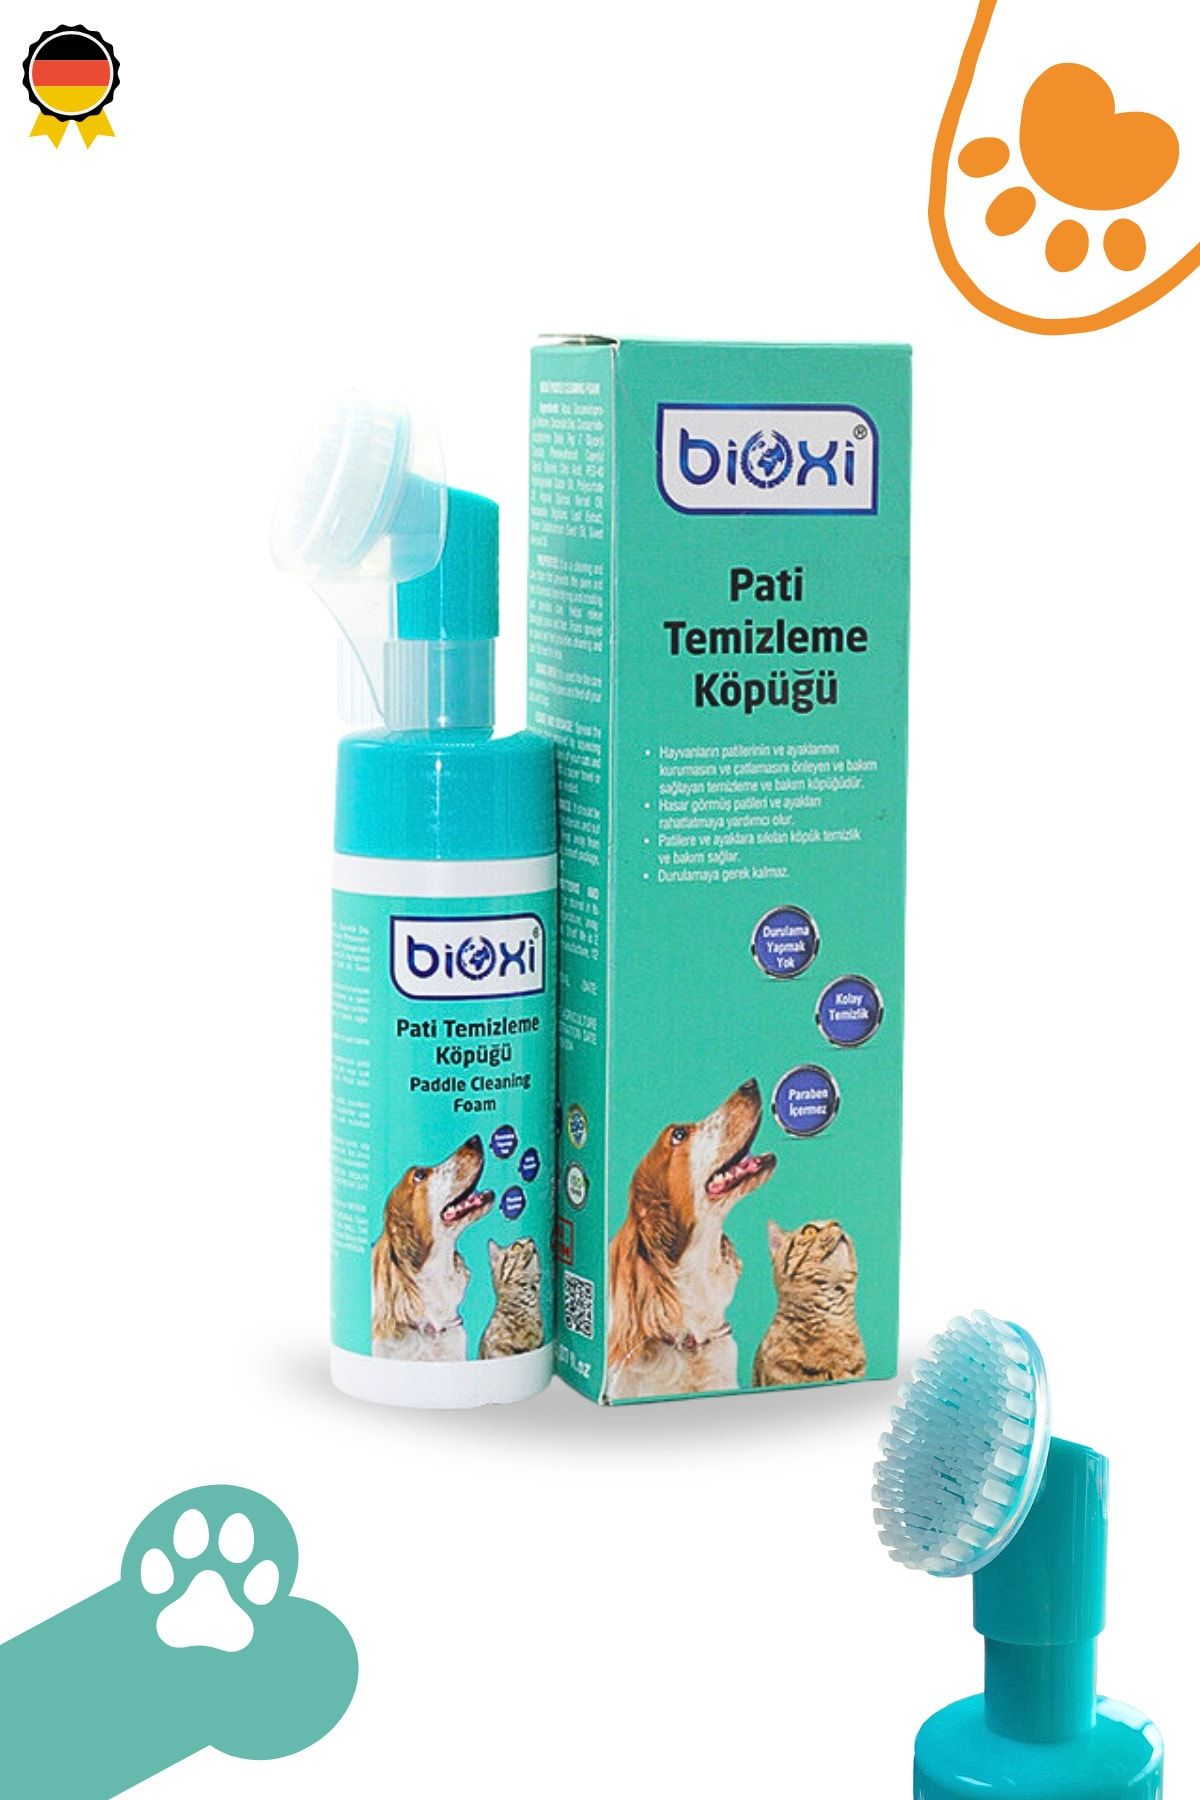 Bioxi ® Pati Temizleme Köpüğü 150 ml Köpek, Kedi Ürünleri